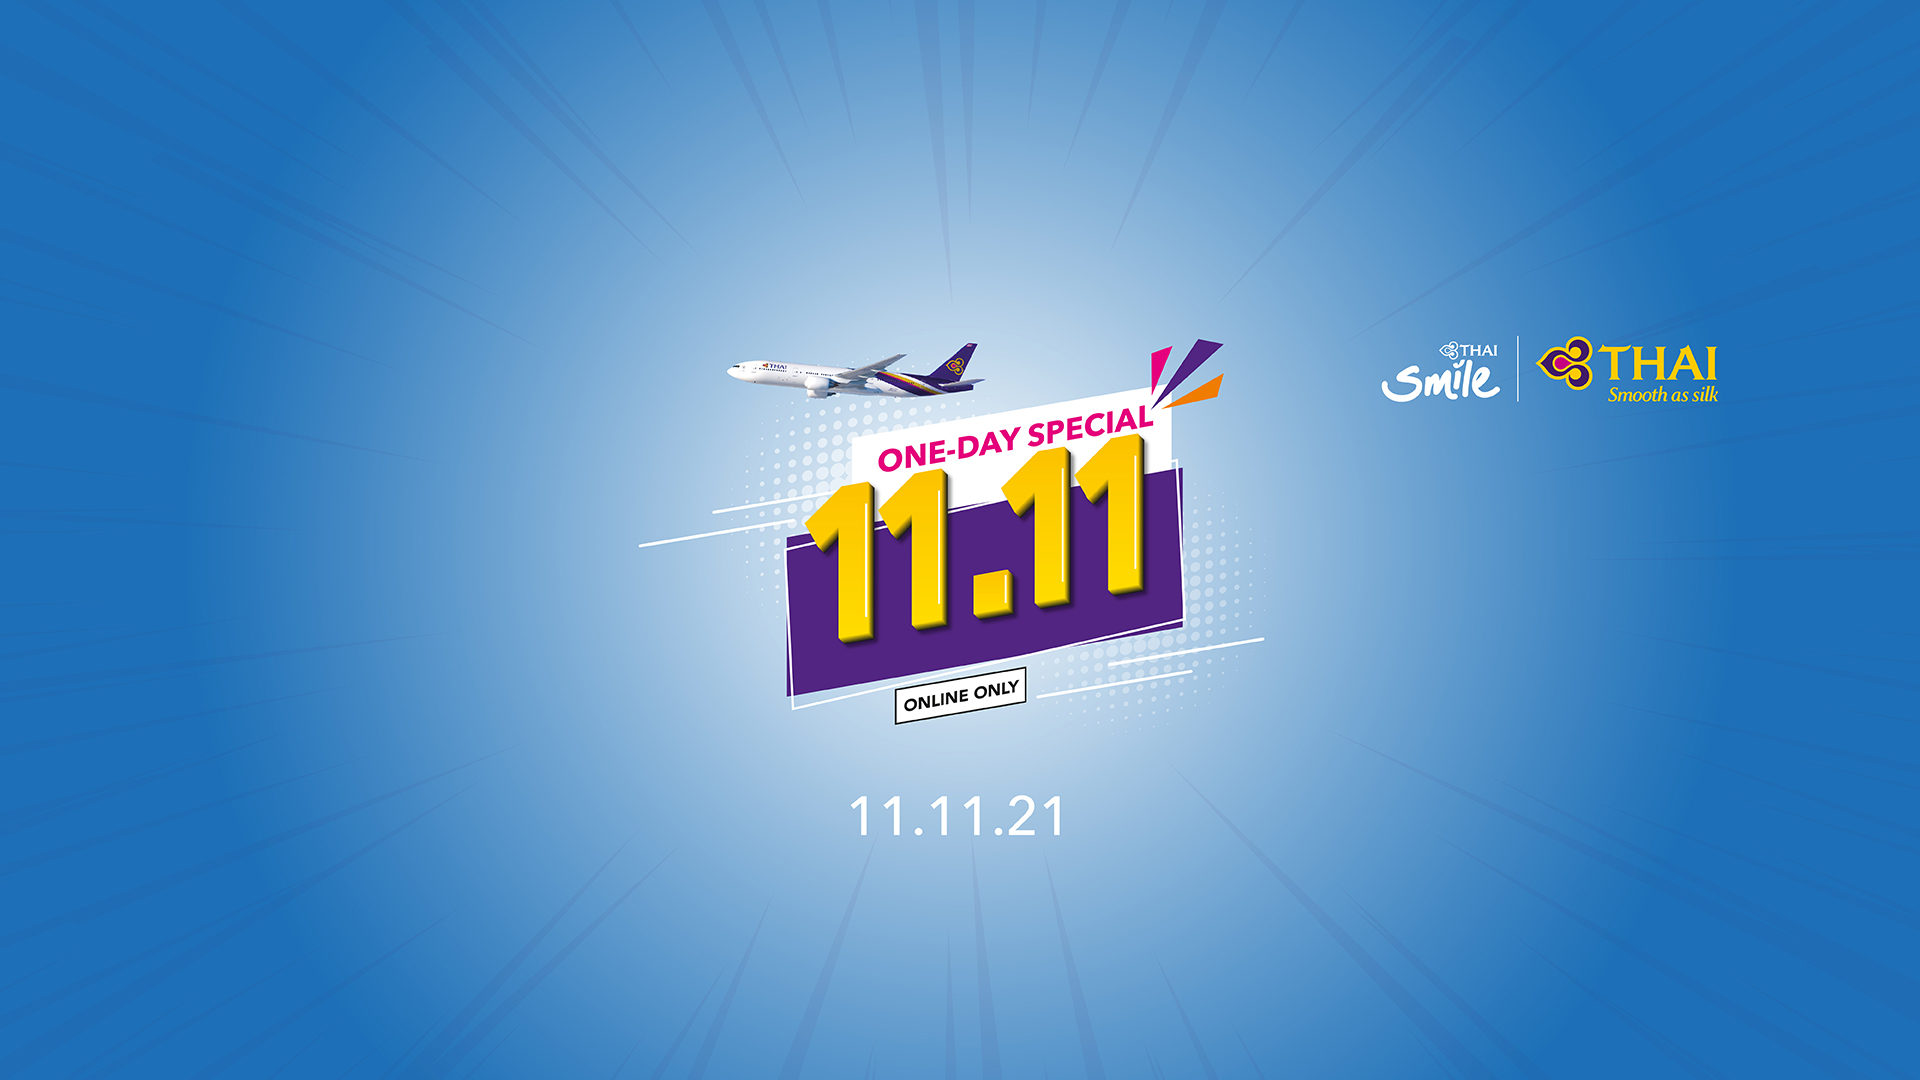 搭泰國航空前往泰國的旅客有機會贏得台北-曼谷來回機票